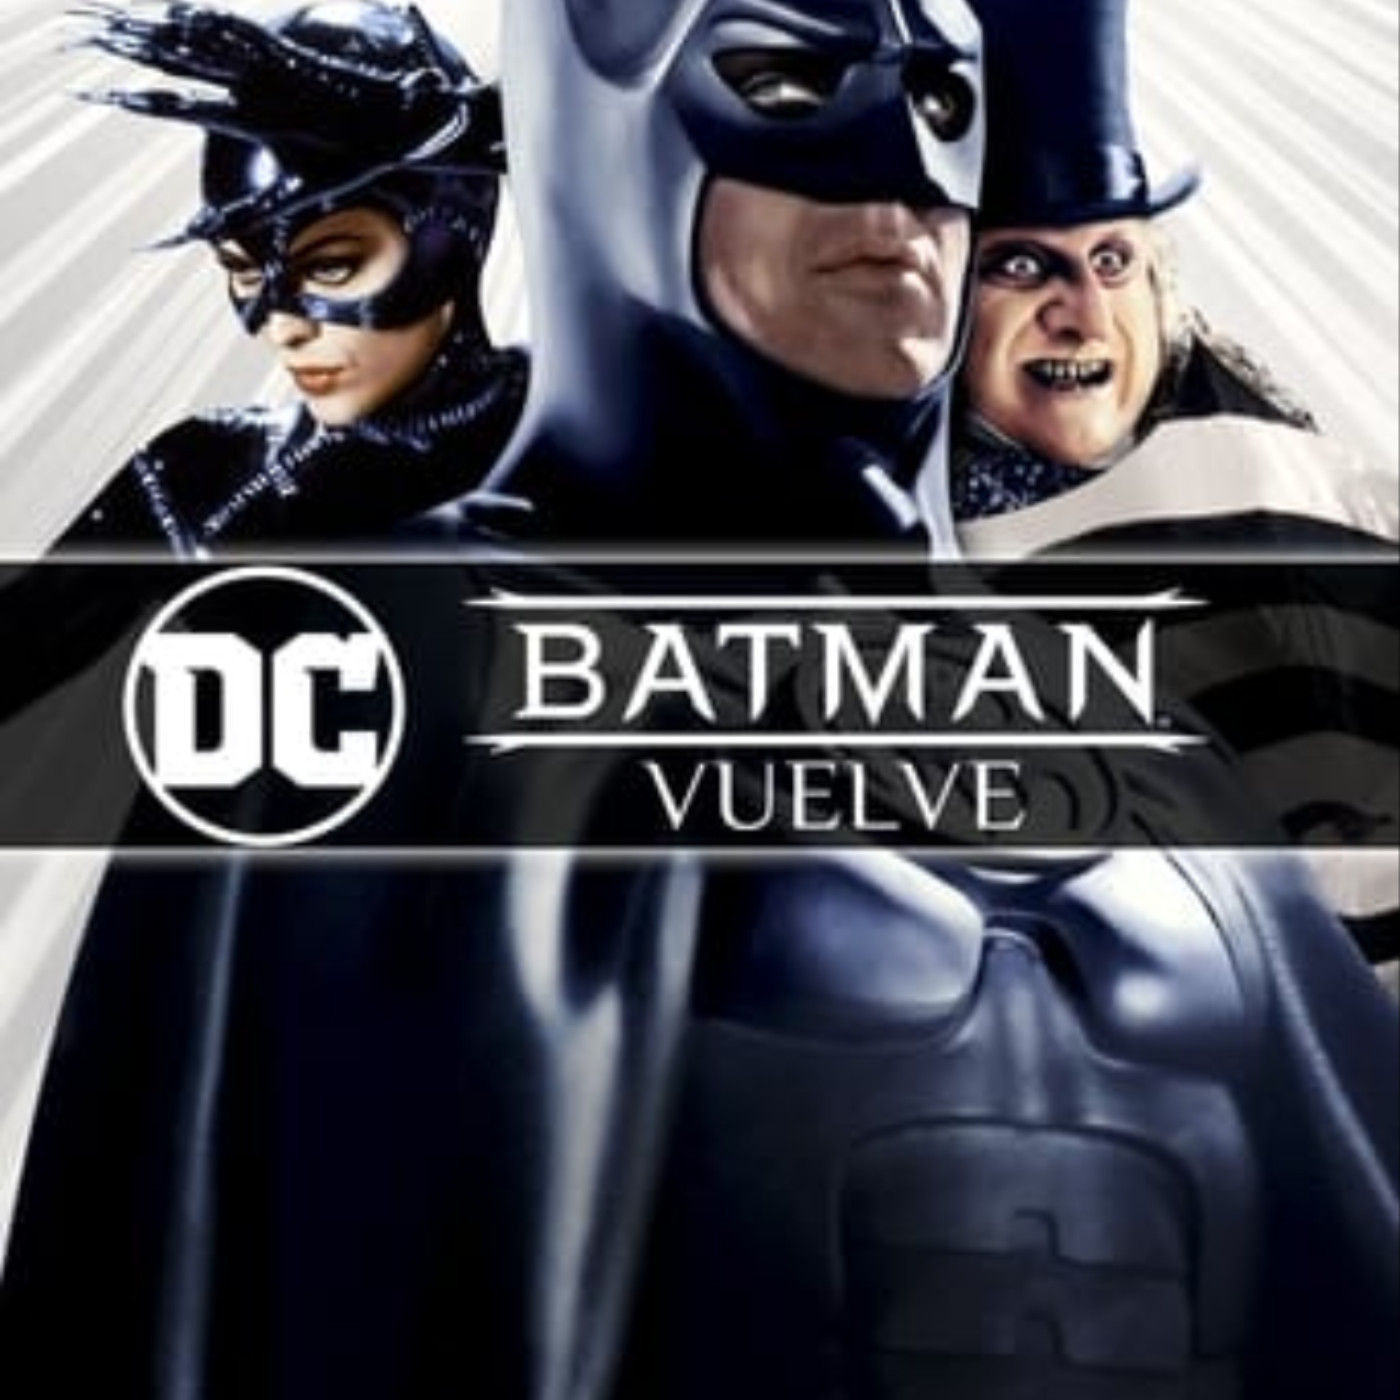 mHD] Batman vuelve pelicula completa en español gratis Cinema | Podcast on  SoundOn